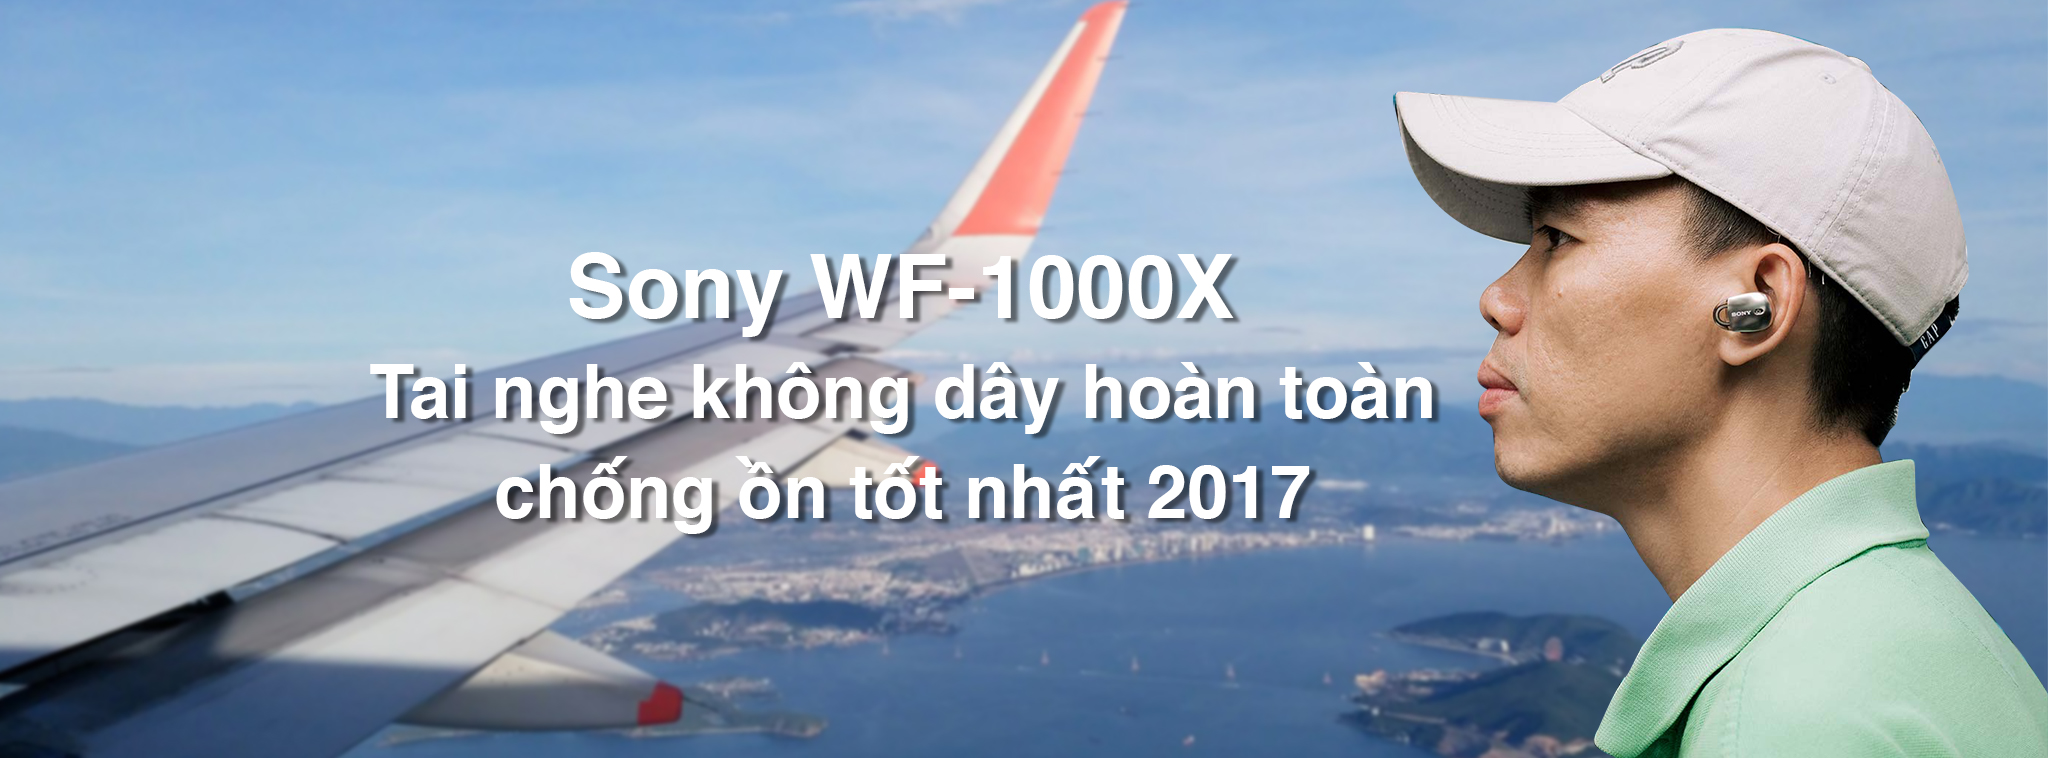 Sony WF-1000X - tai nghe không dây hoàn toàn có âm thanh và chống ồn tốt nhất 2017